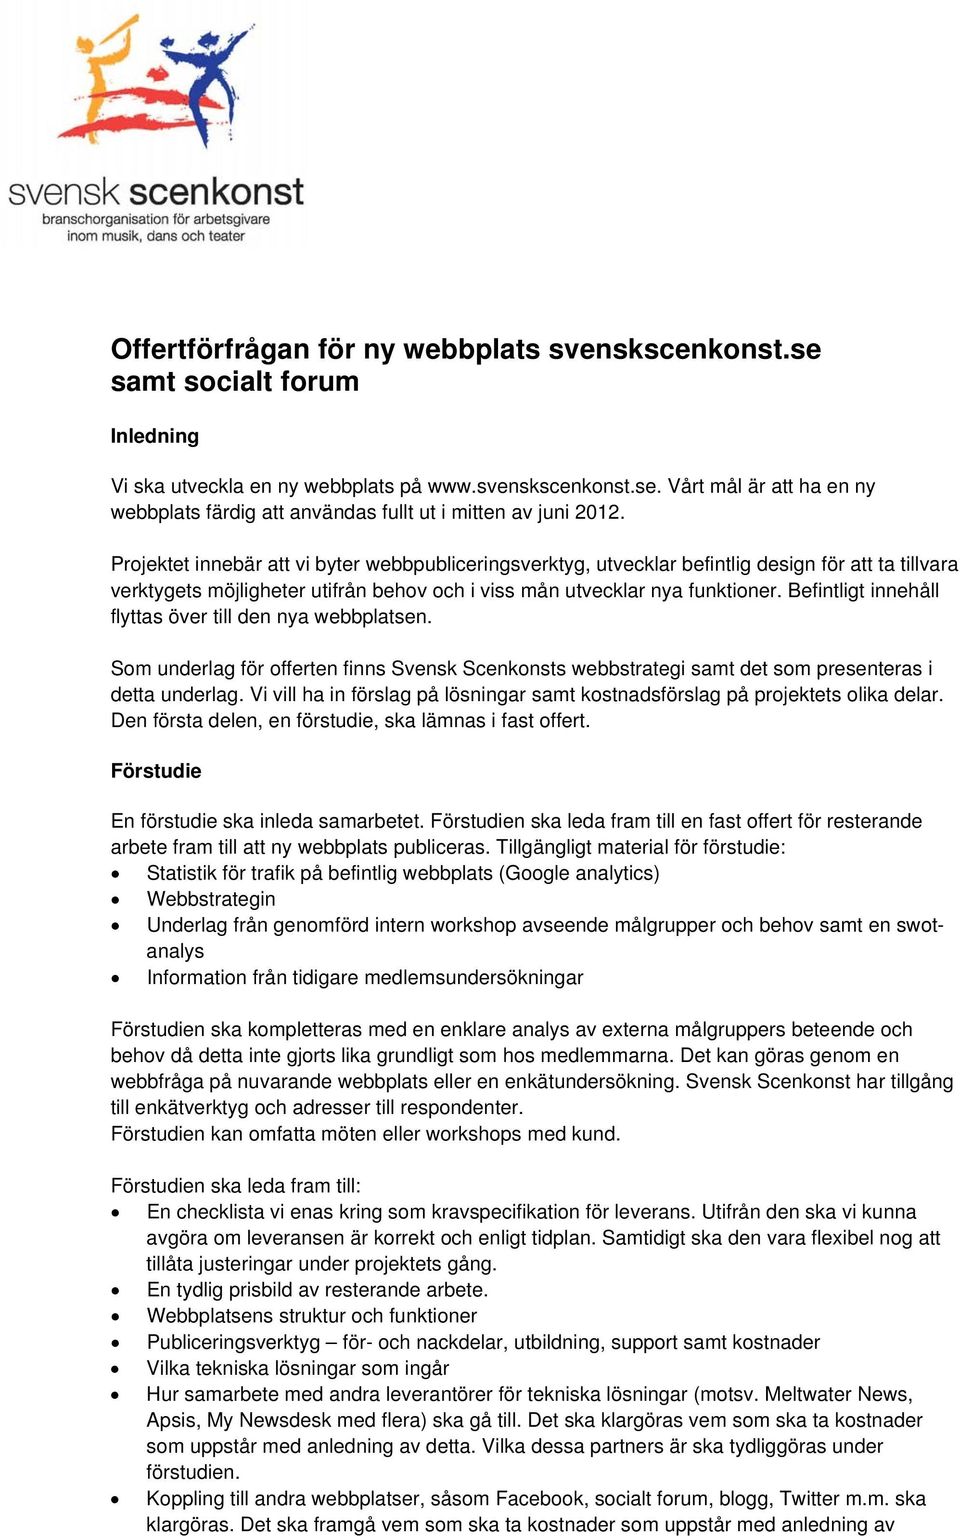 Befintligt innehåll flyttas över till den nya webbplatsen. Som underlag för offerten finns Svensk Scenkonsts webbstrategi samt det som presenteras i detta underlag.